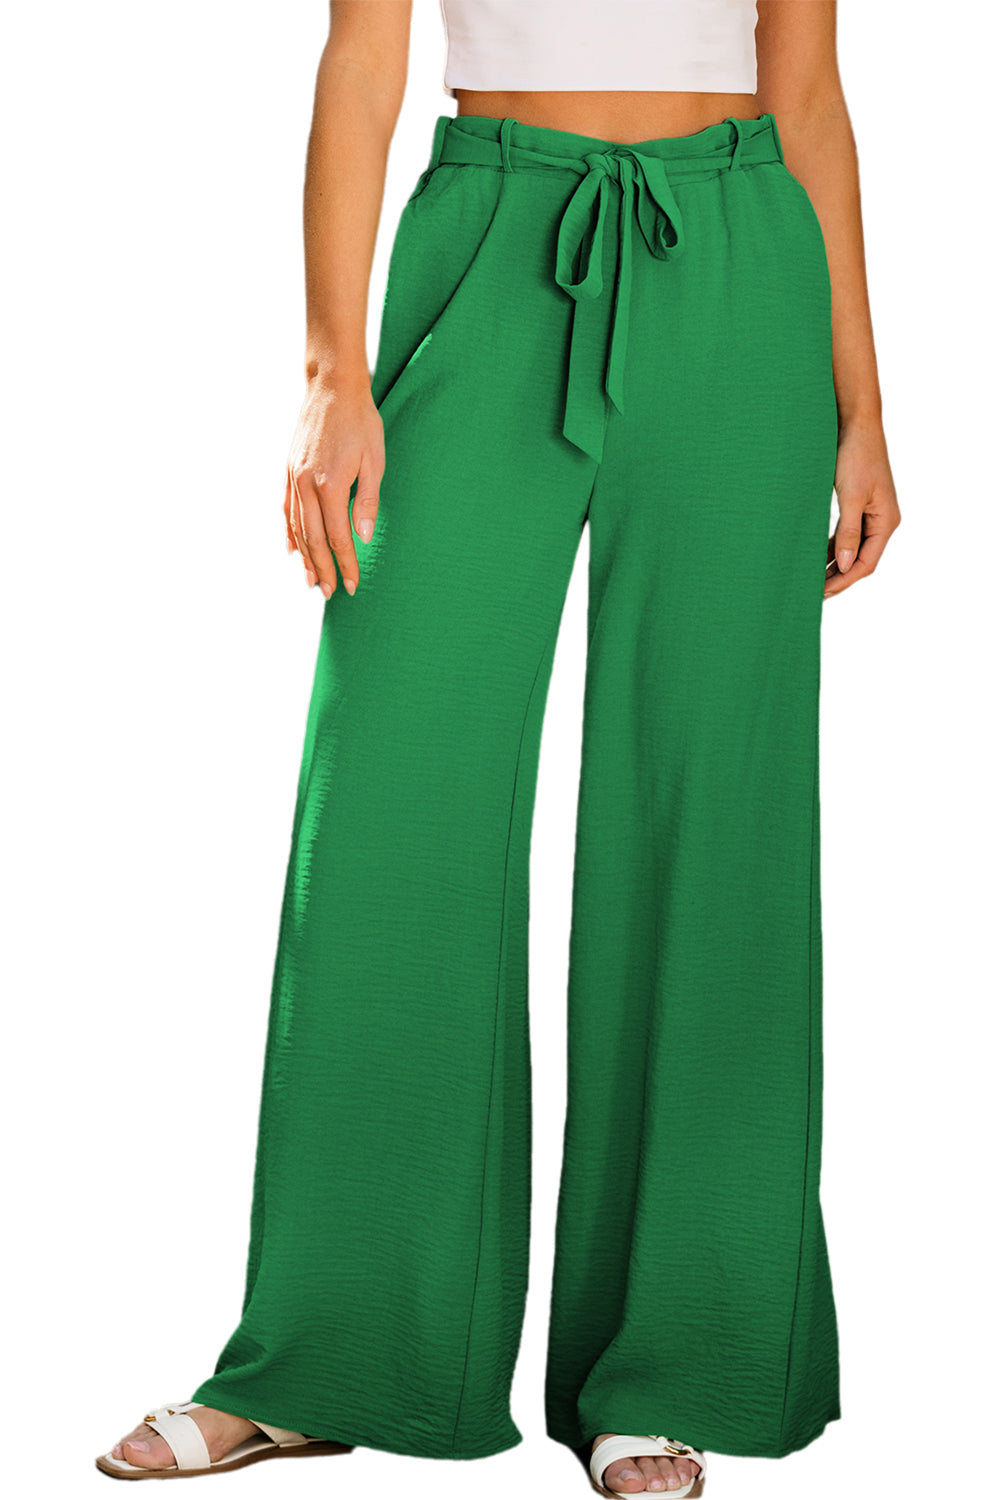 Hellgrüne Hose mit weitem Bein und hohem Bund, Schlaufen und Gürtel